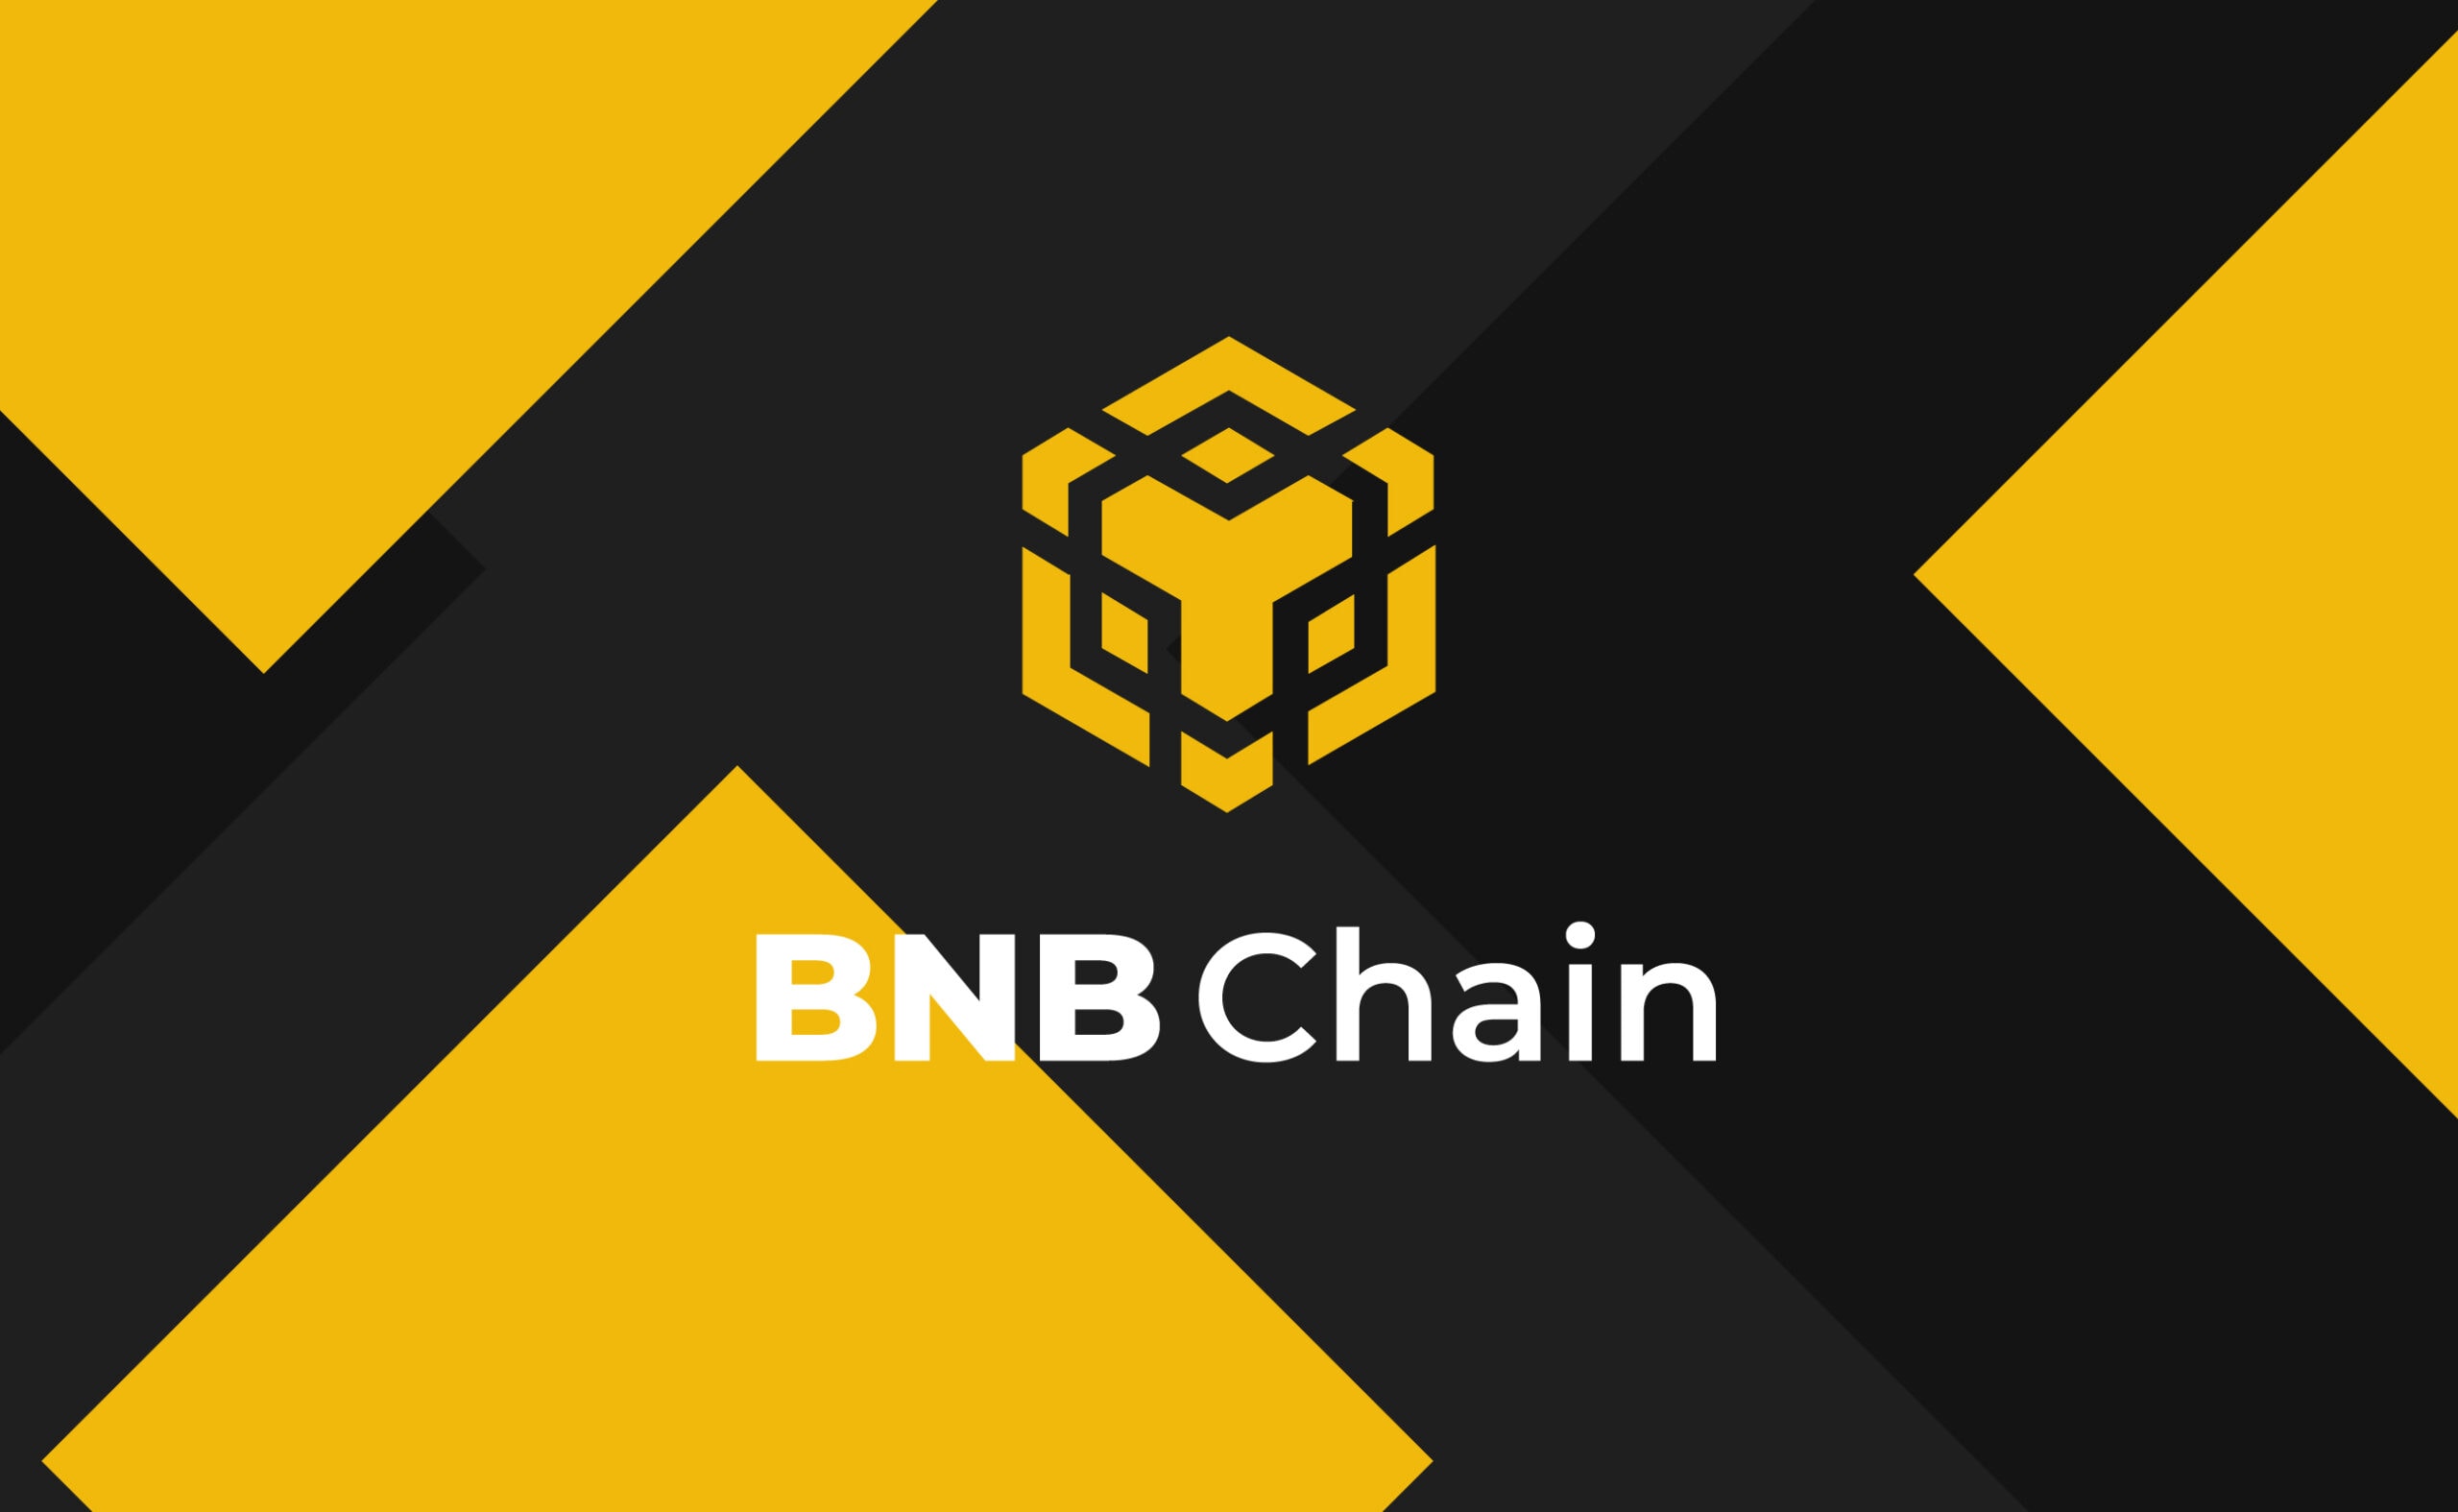 пользователь с ником ArnoB опубликовал на форуме BNB Chain предложение об изменении системы начисления платы за газ. Его суть сводится к тому, чтобы сделать механизм более гибким, что позволит BNB Chain «поспевать» за L2-блокчейнами. 